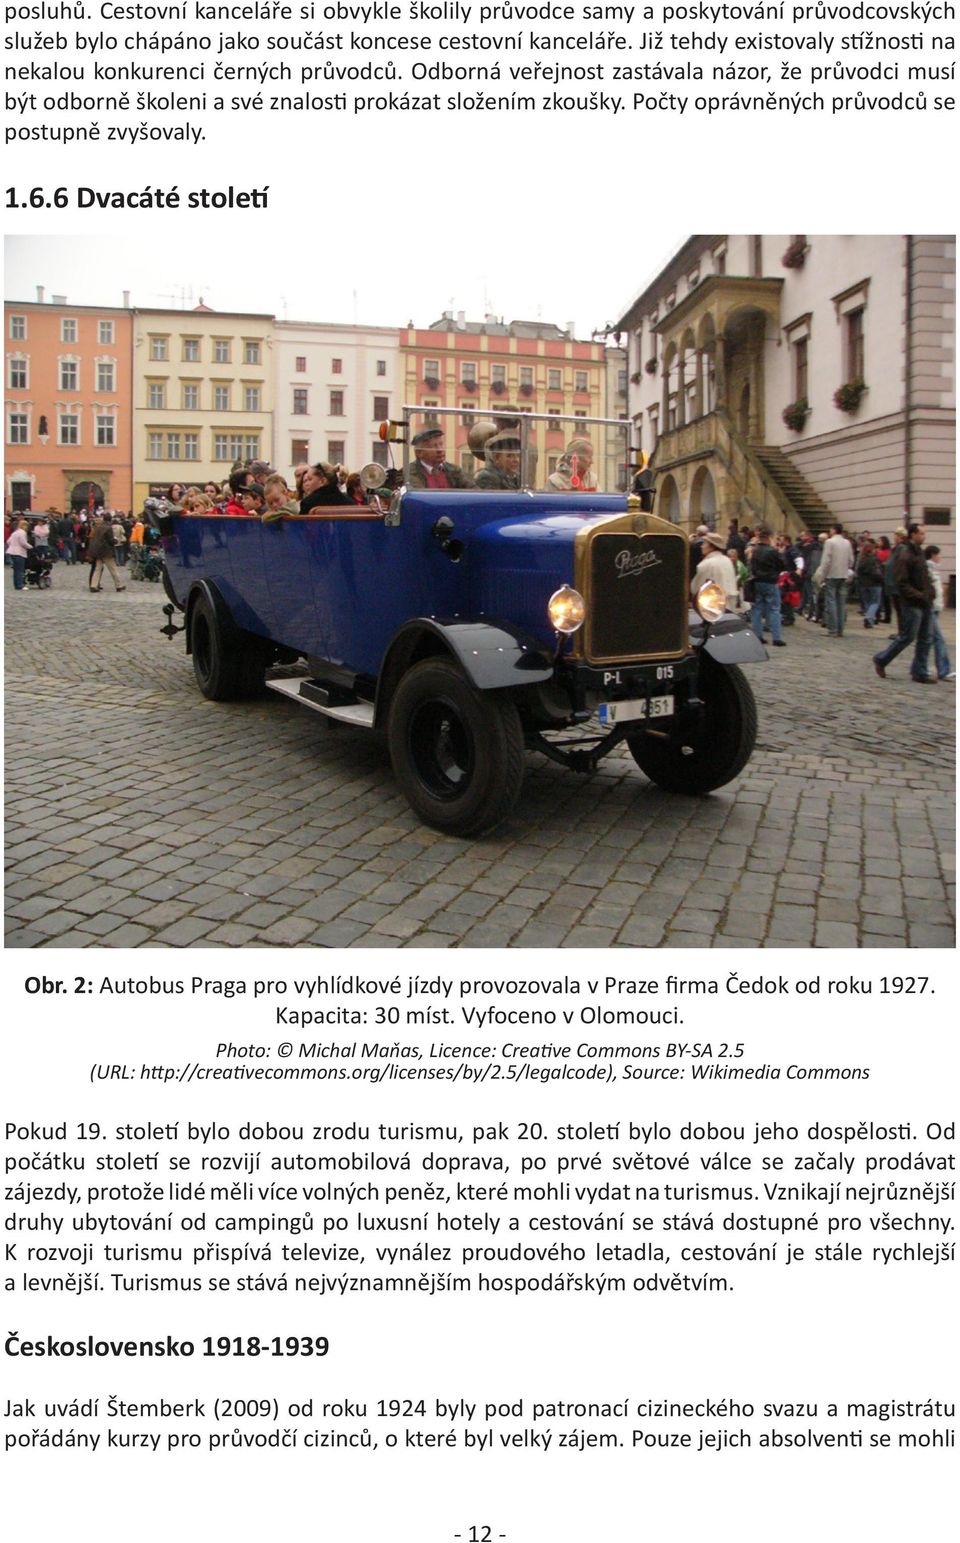 Počty oprávněných průvodců se postupně zvyšovaly. 1.6.6 Dvacáté století Obr. 2: Autobus Praga pro vyhlídkové jízdy provozovala v Praze firma Čedok od roku 1927. Kapacita: 30 míst. Vyfoceno v Olomouci.